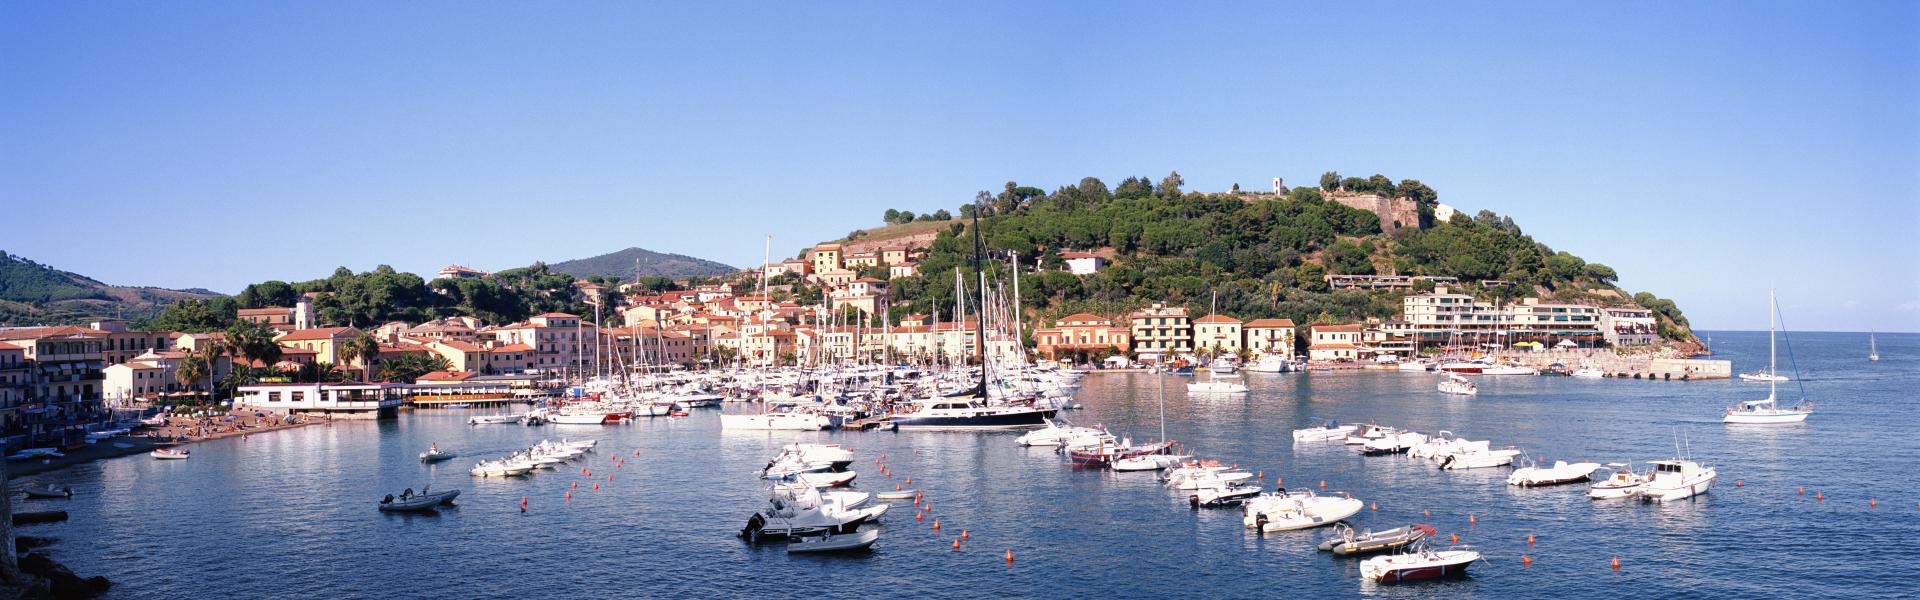 Porto Azzurro Scenic View